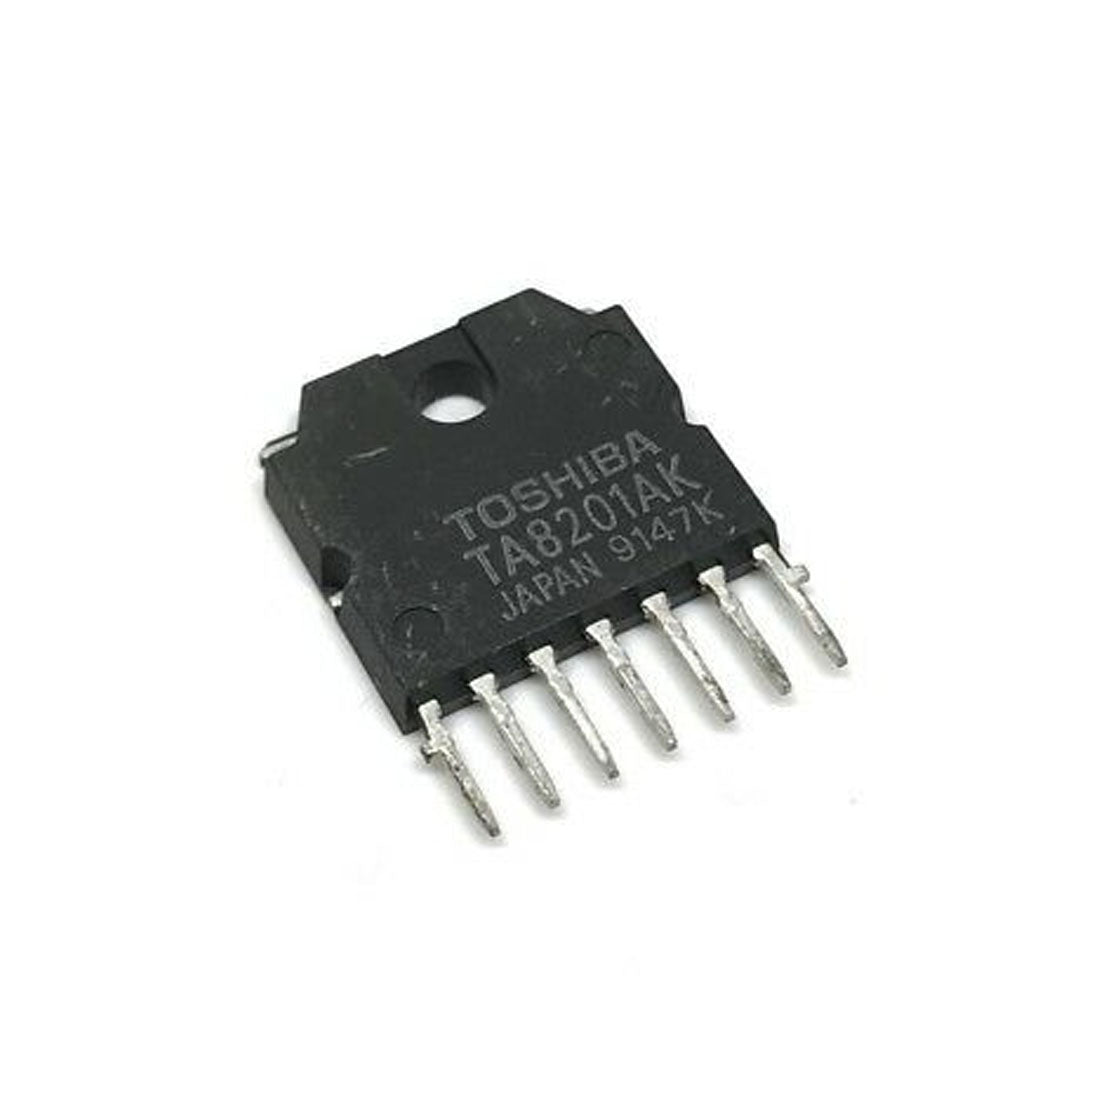 TOSHIBA TA8201AK Componente elettronica, circuito integrato, 7 contatti